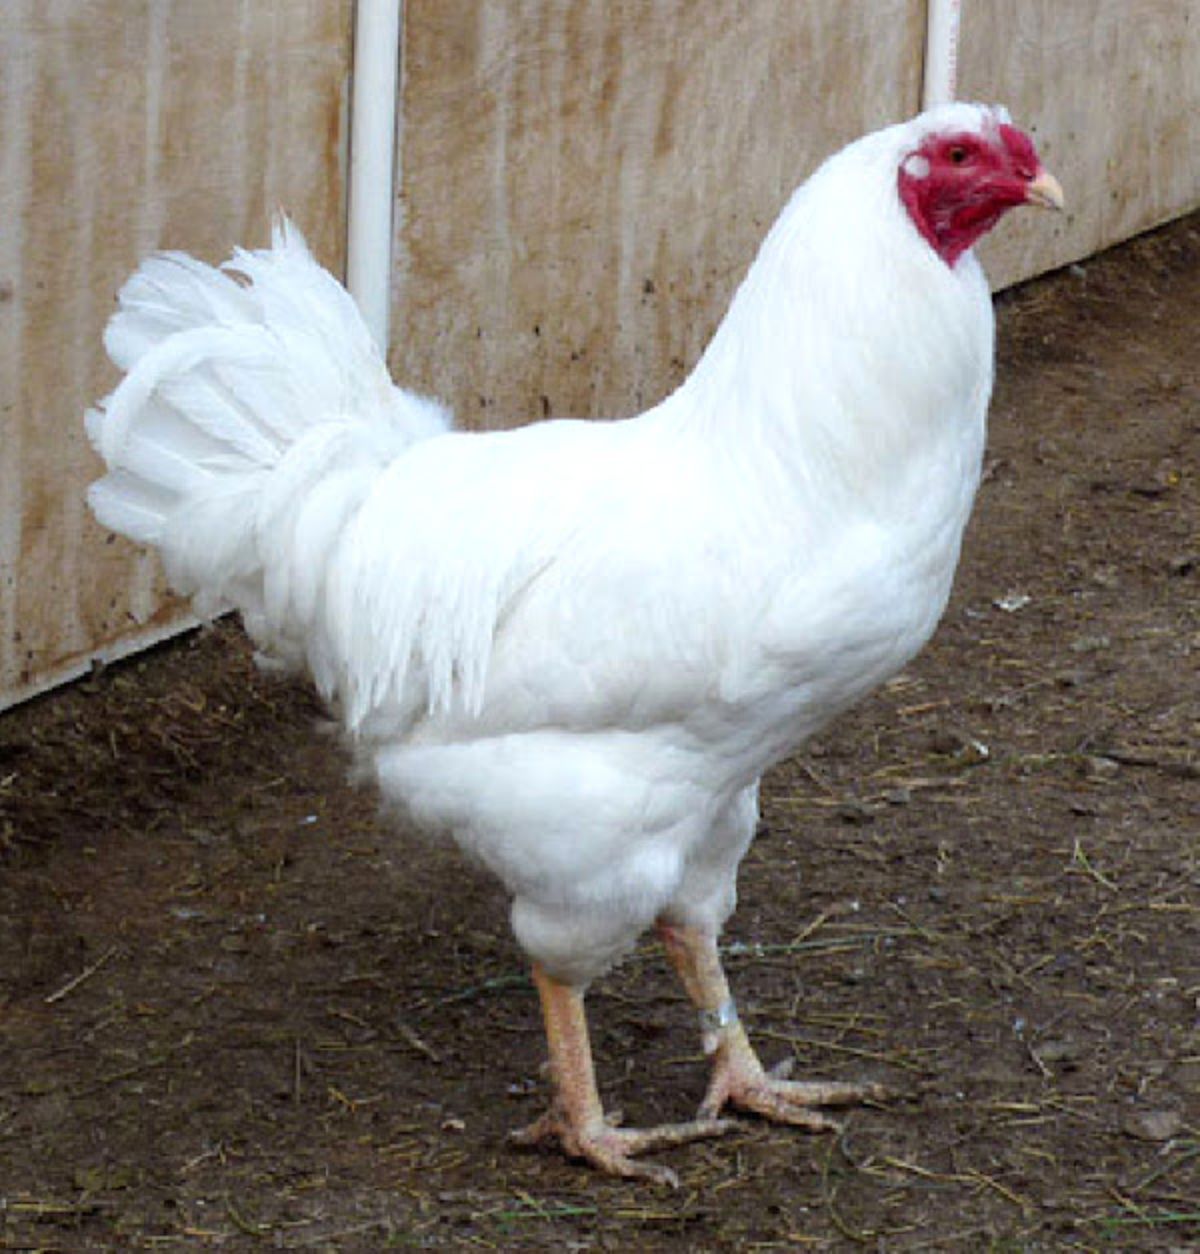 An adorable white Chantecler Chicken in a backyard.